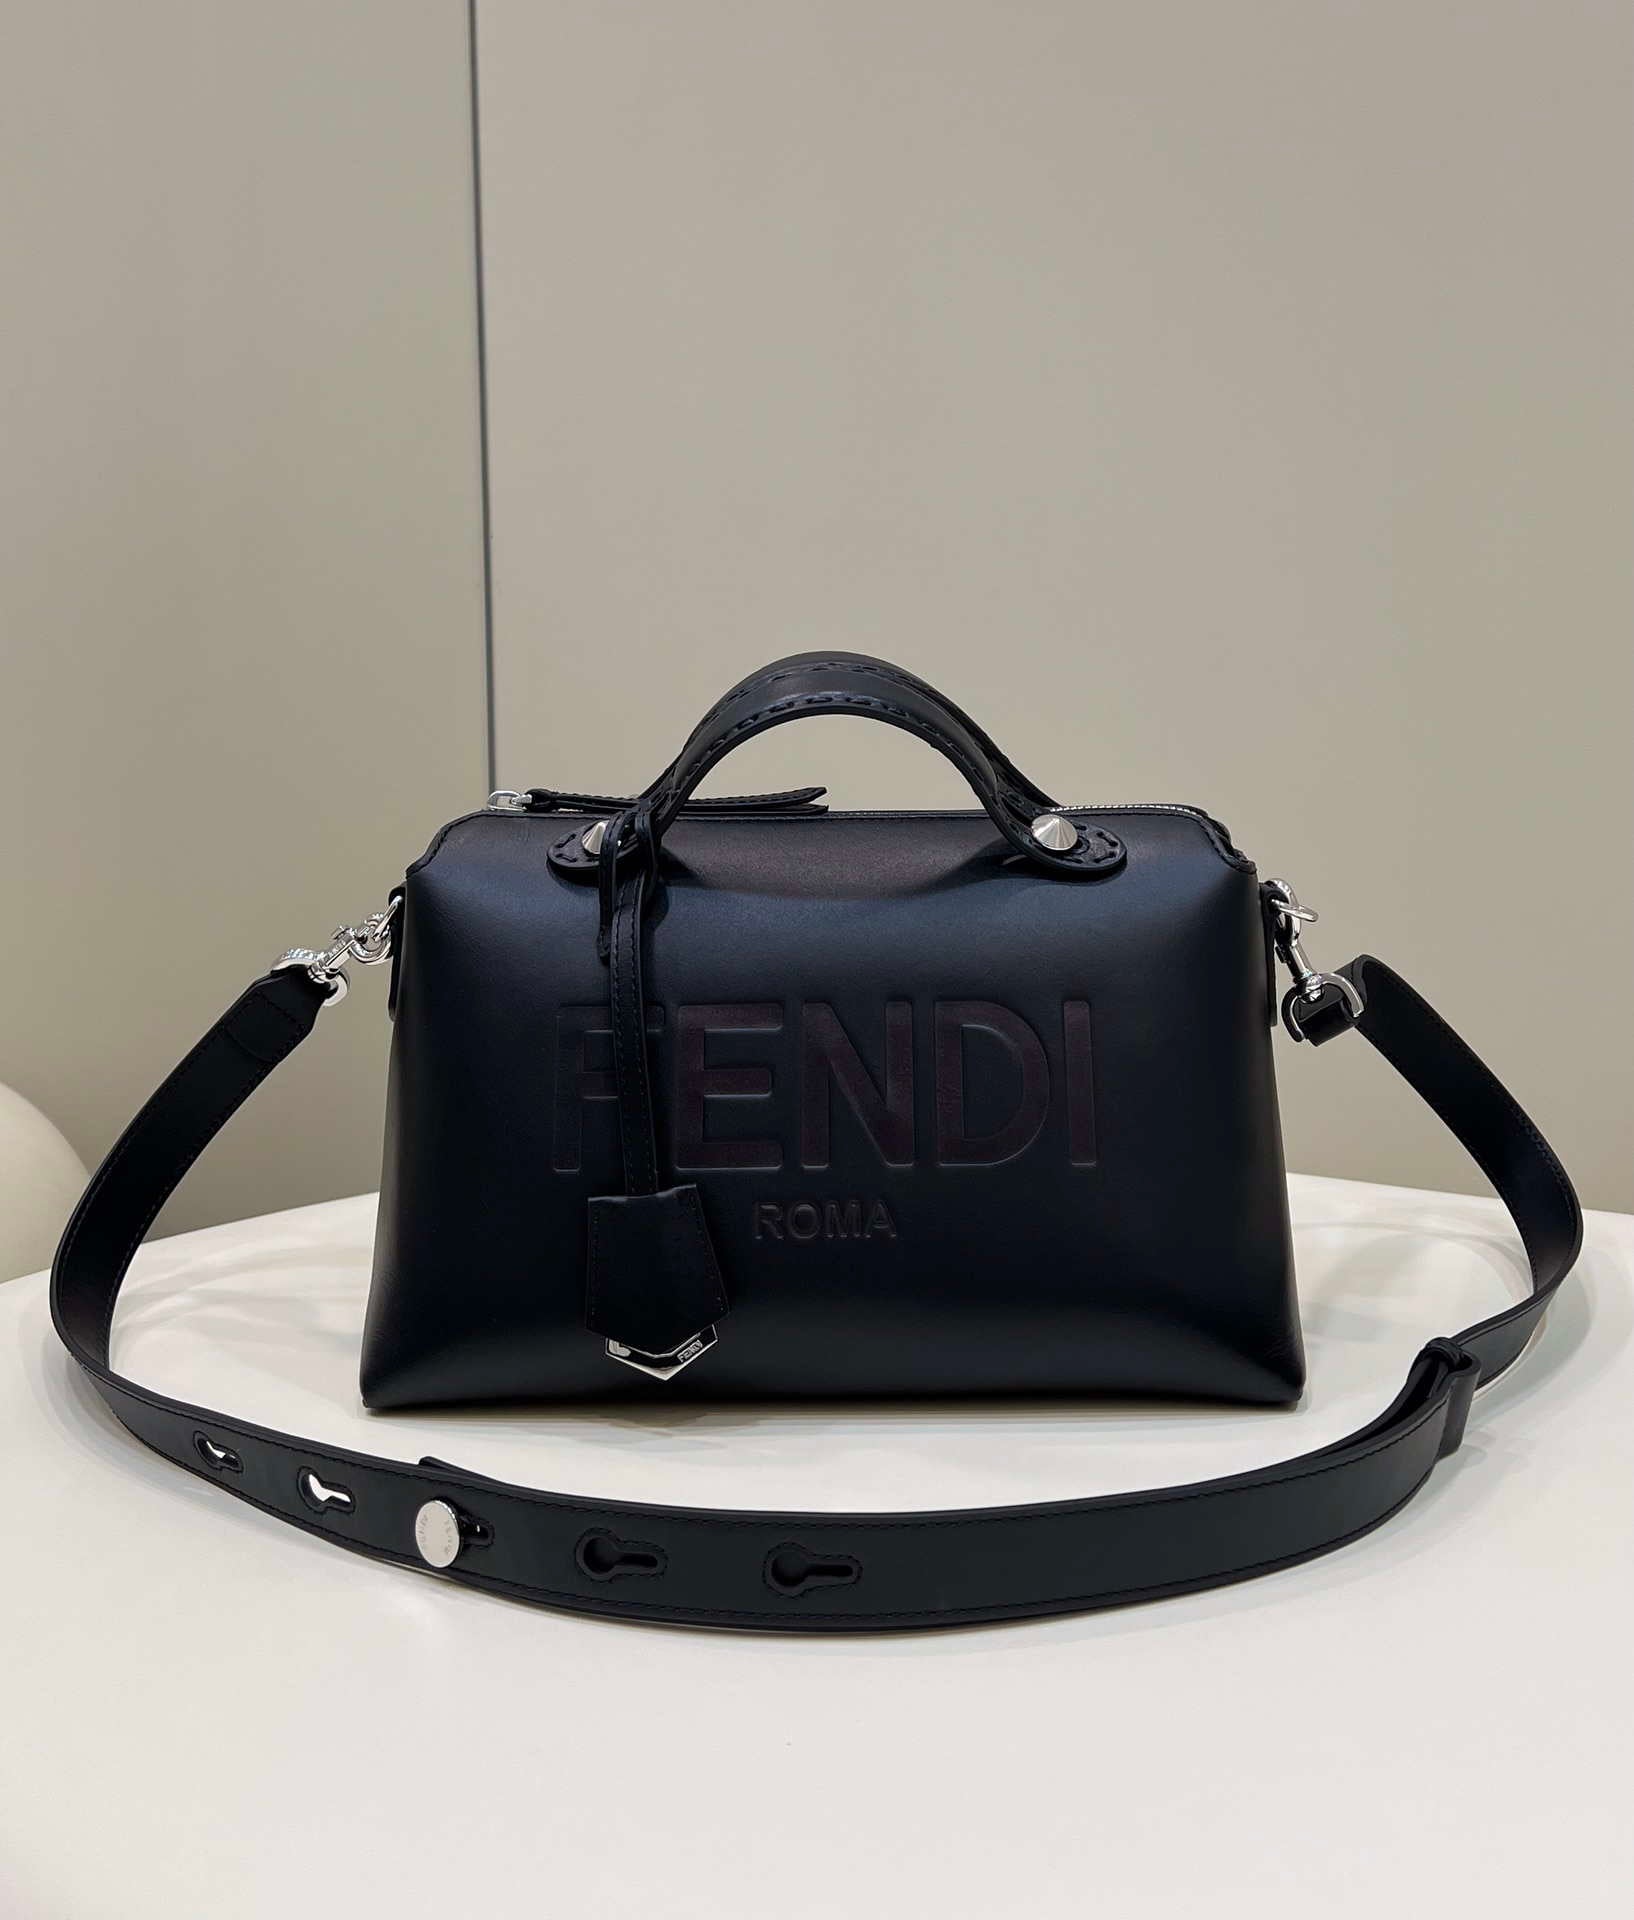 fendi-8bl146-by-the-way-medium-leather-boston-bag-046-luxibags.ru